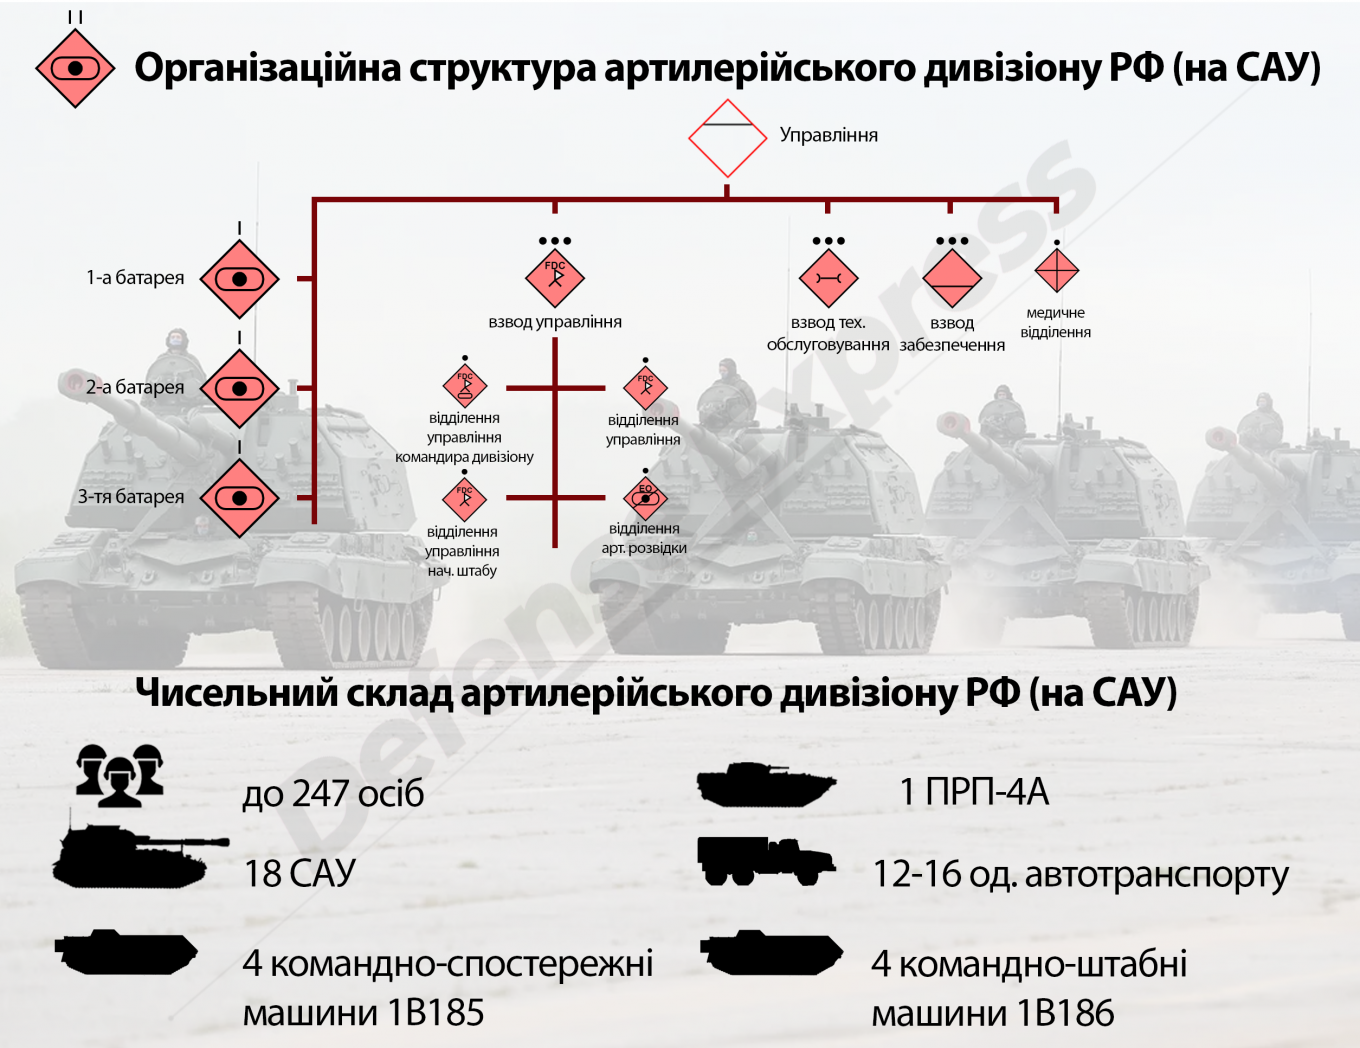 Організаційно-штатна структура артилерійського дивізіону РФ САУ